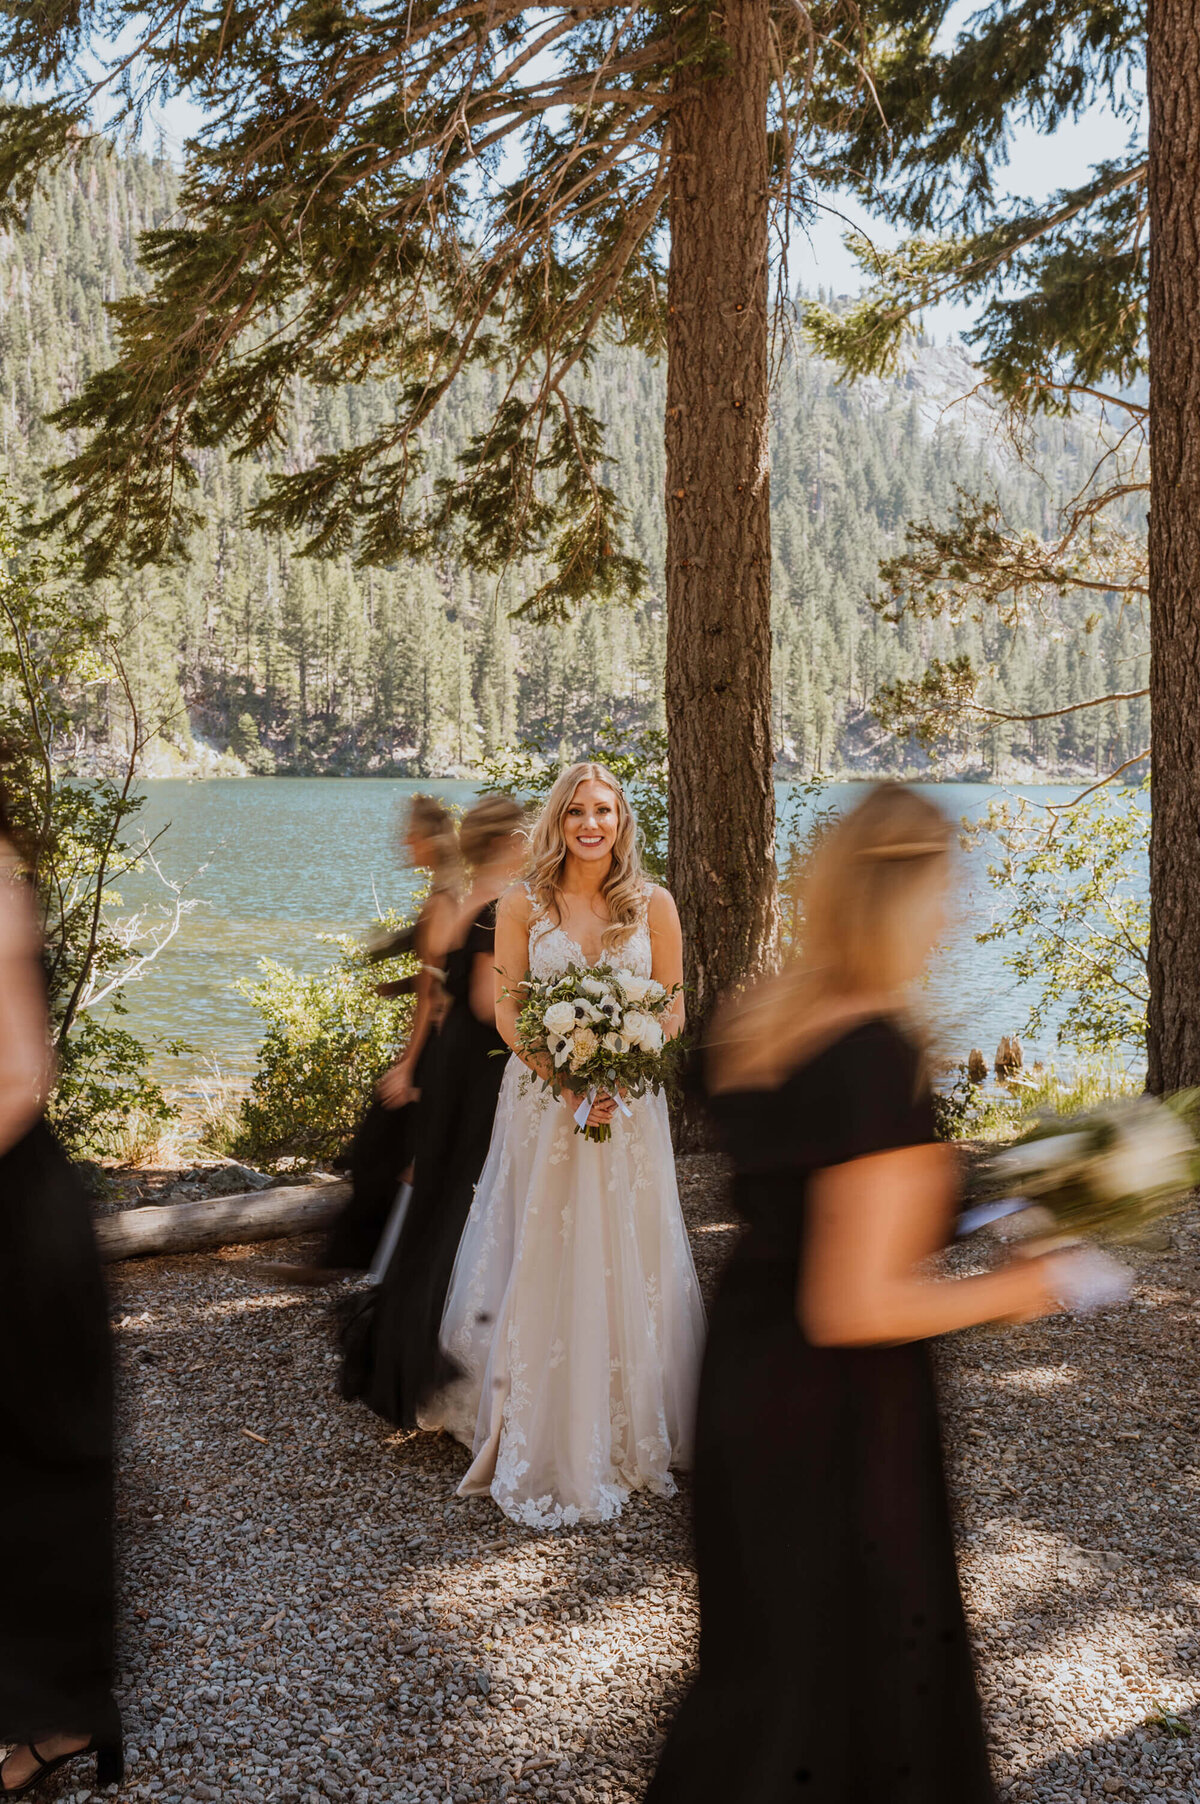 A bridal party photo at a wedding at Sardine Lake, Tahoe.